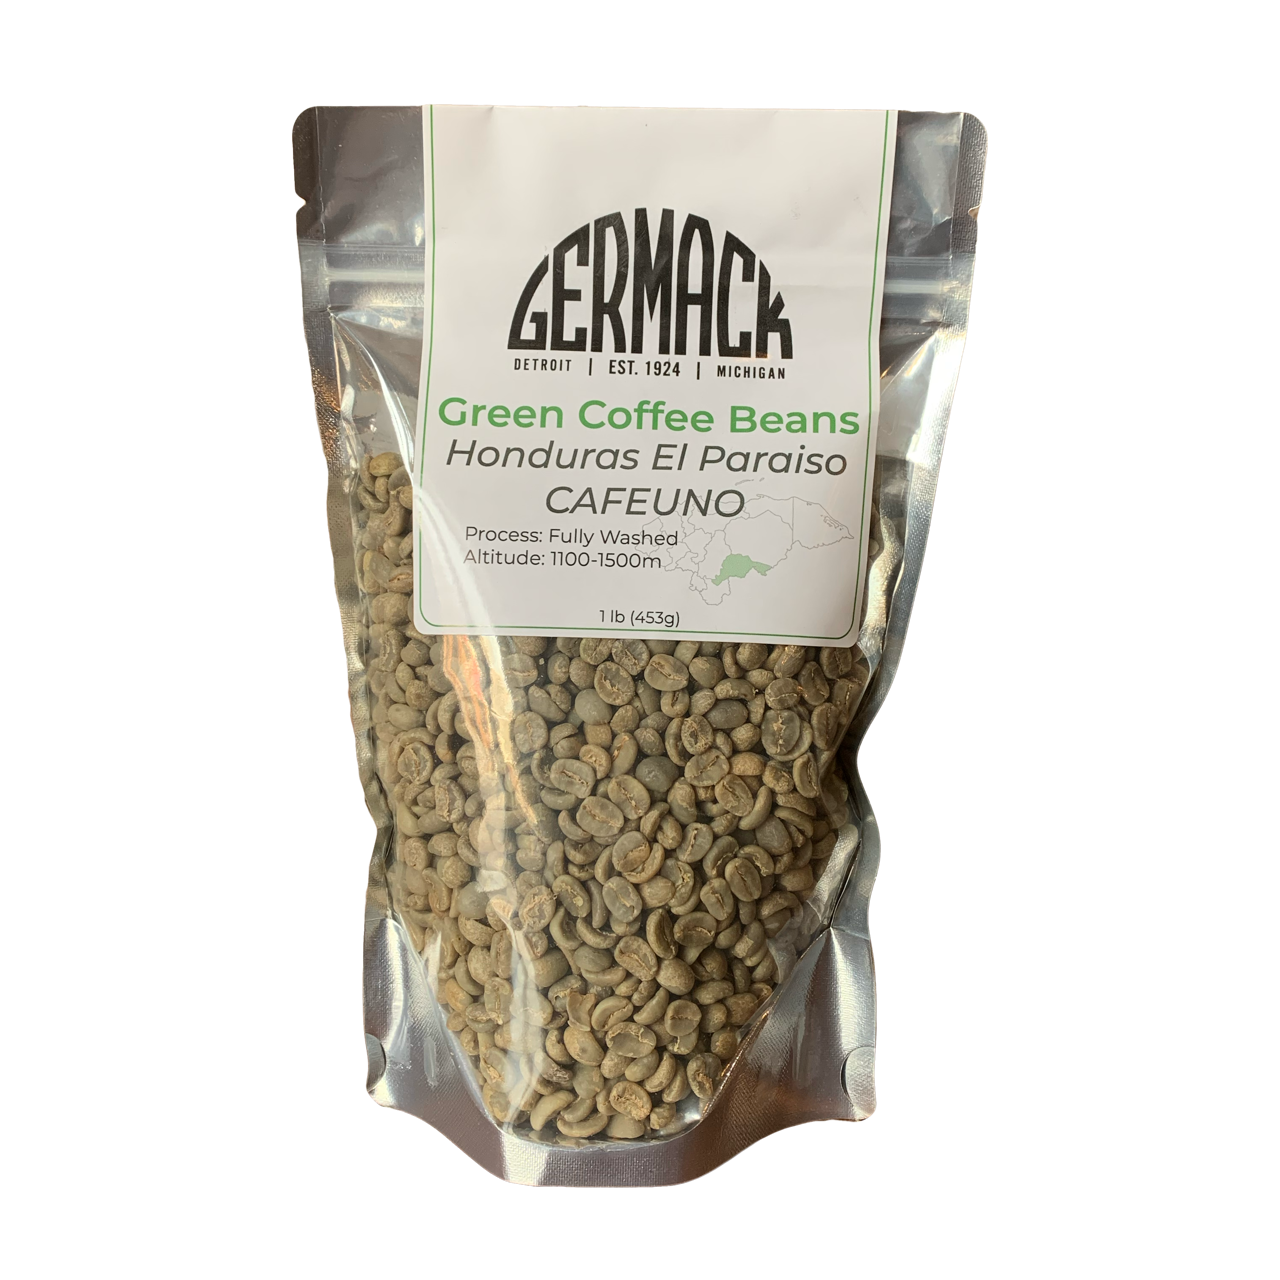 Picture Germack Green Coffee Beans (1lb) - Honduras El Paraiso Cafeuno 